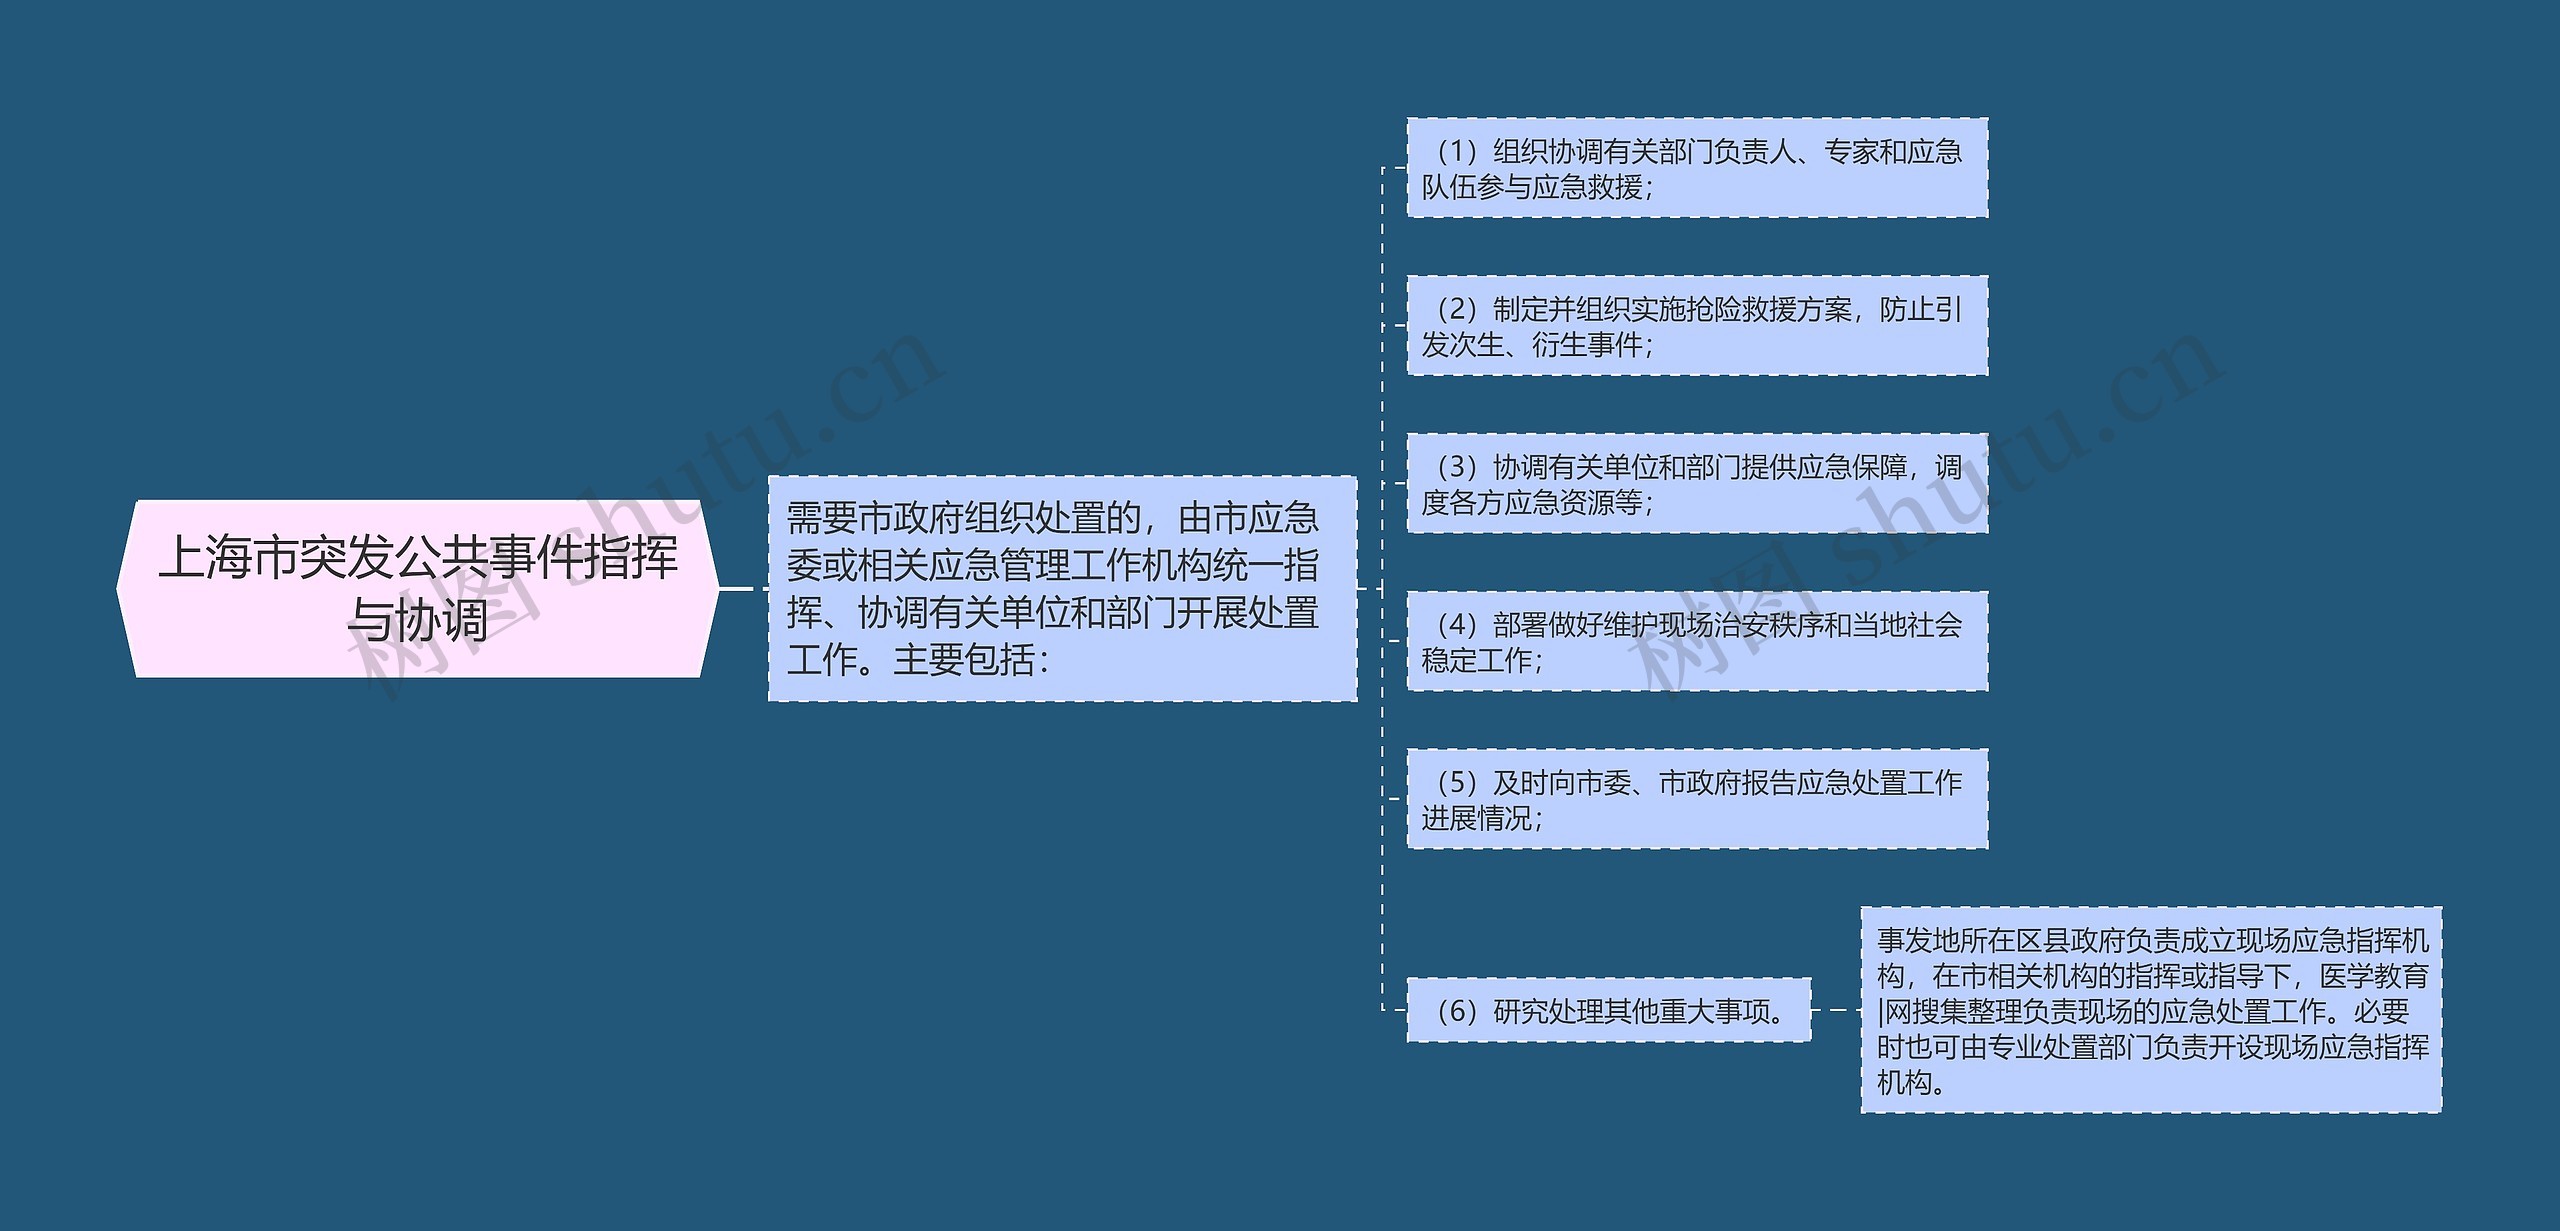 上海市突发公共事件指挥与协调思维导图